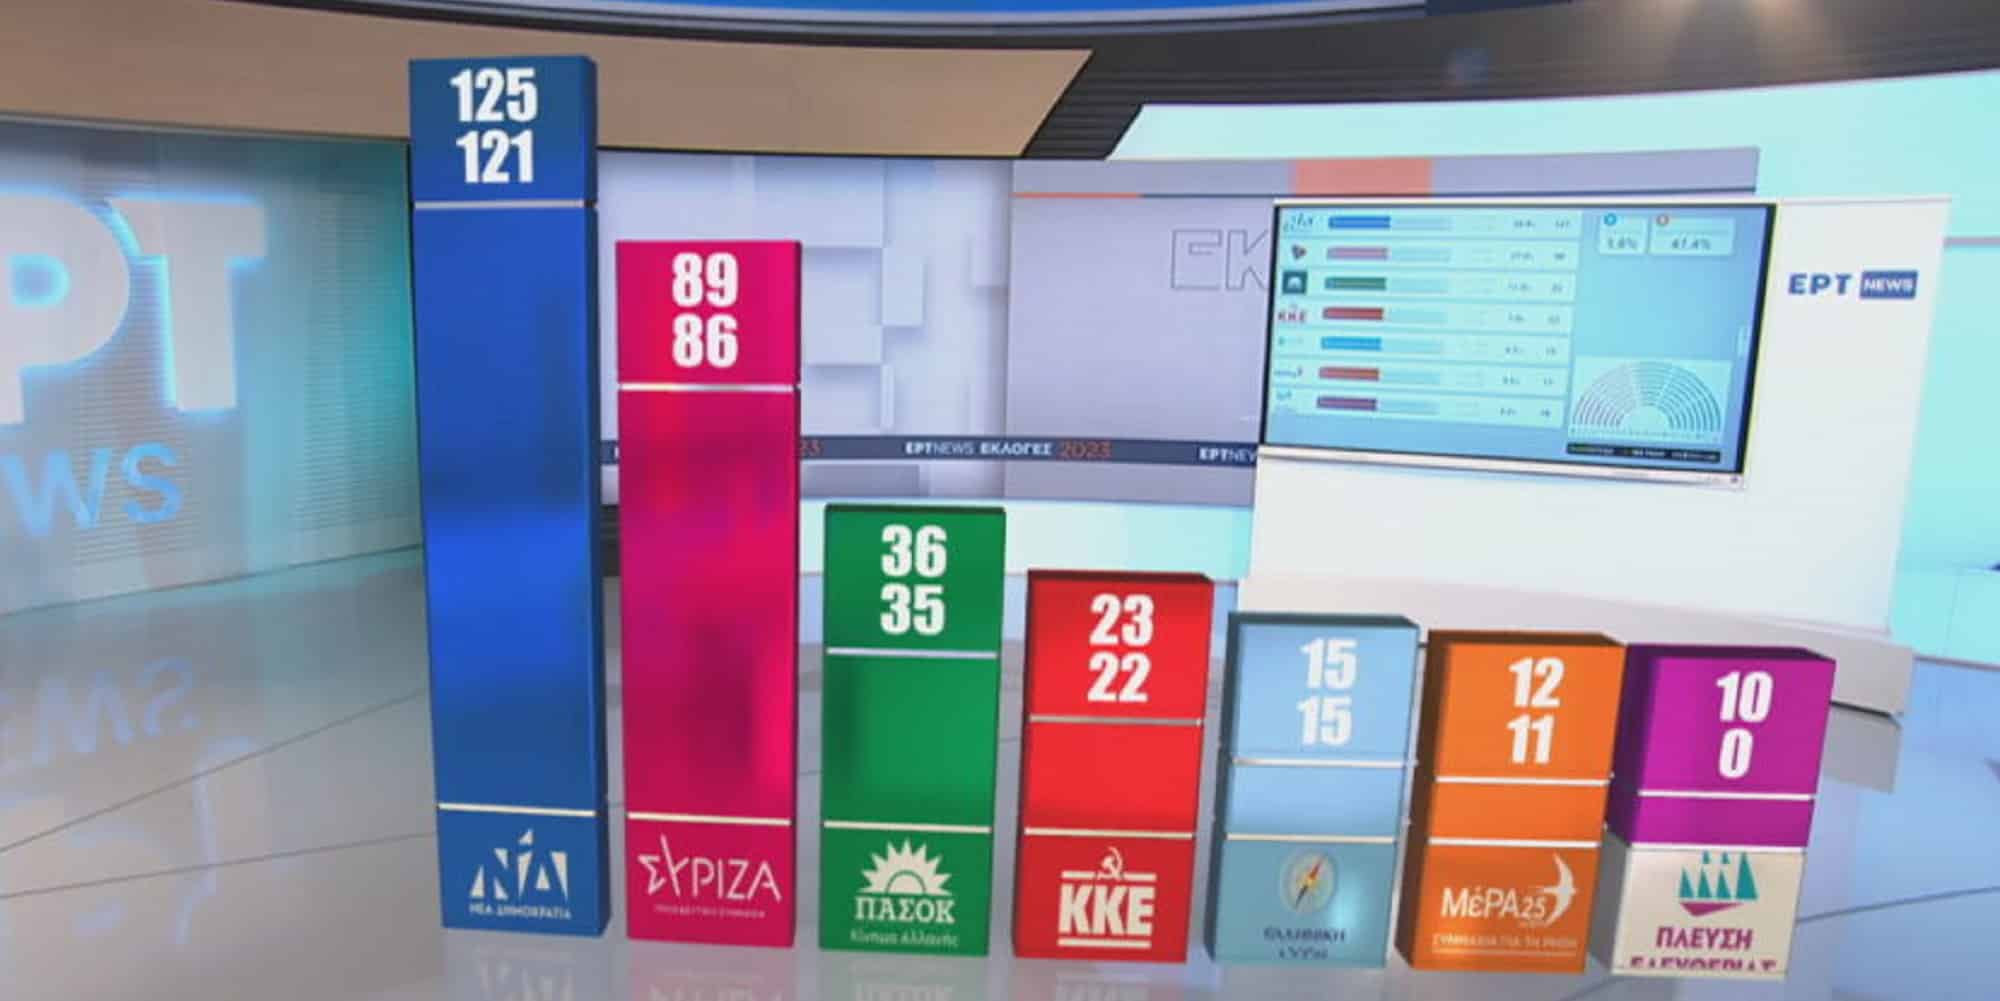 Οι έδρες ανά κόμμα σύμφωνα με το exit poll